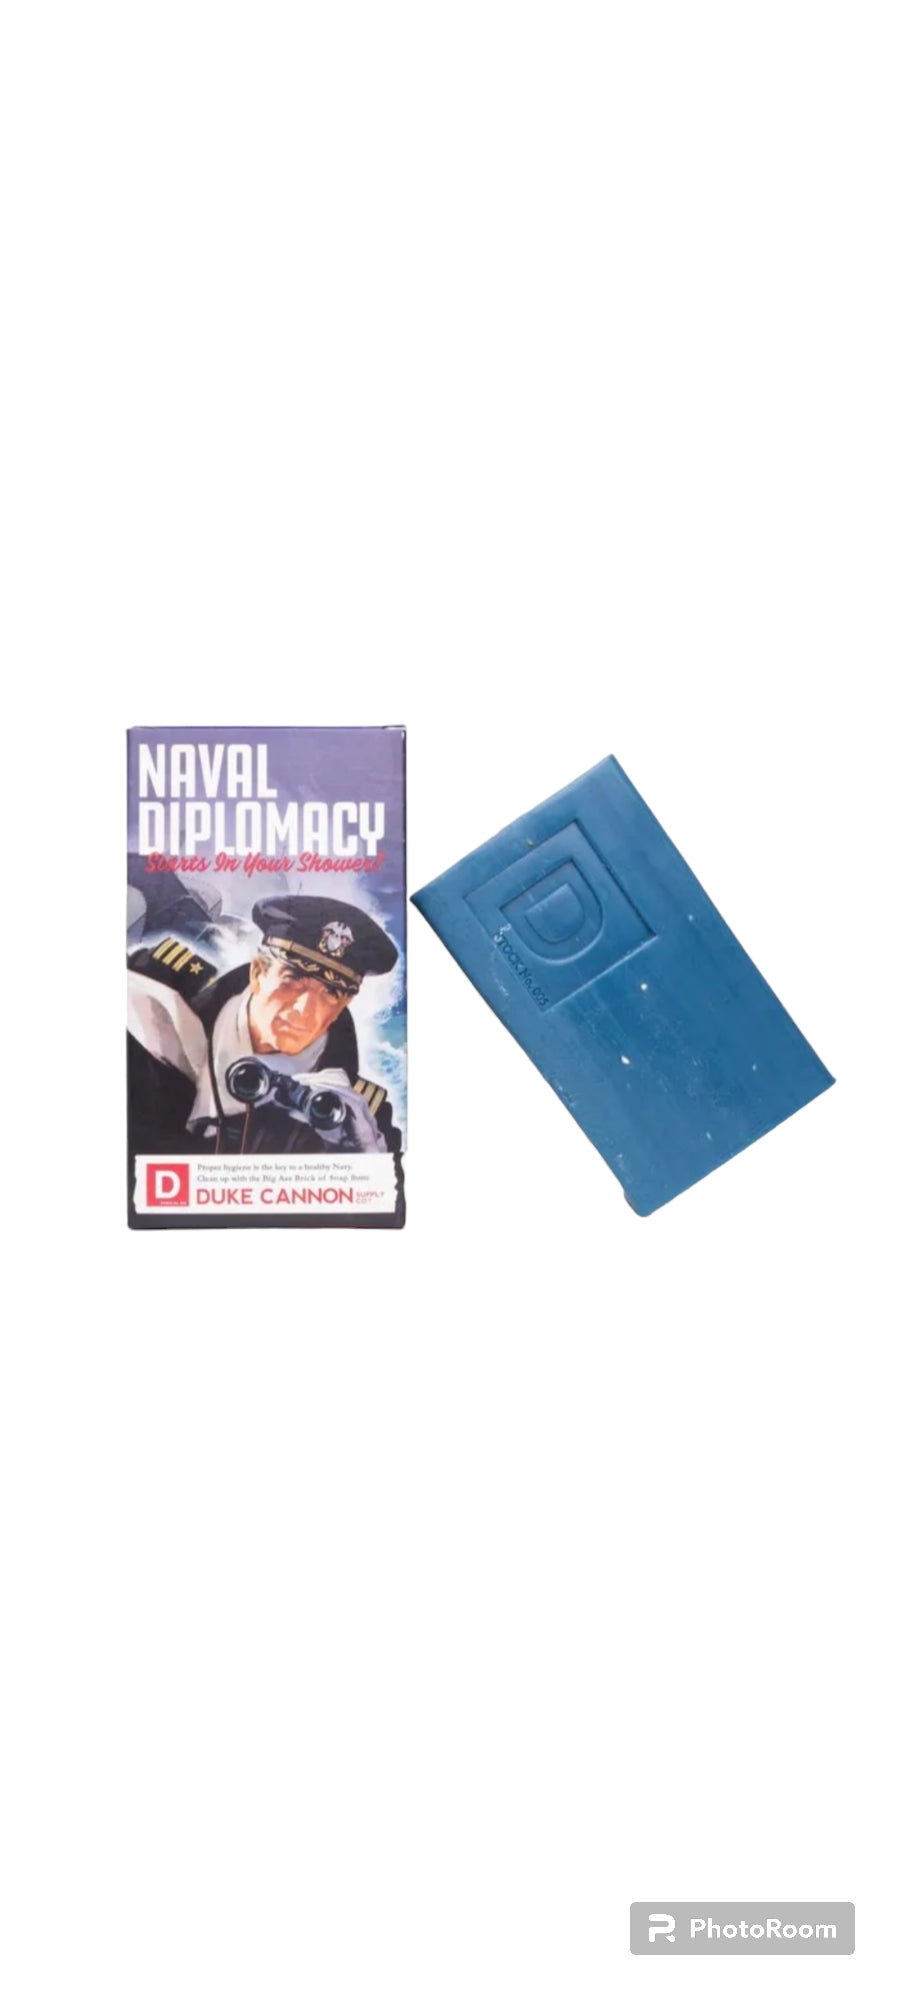 Naval Supremacy Soap